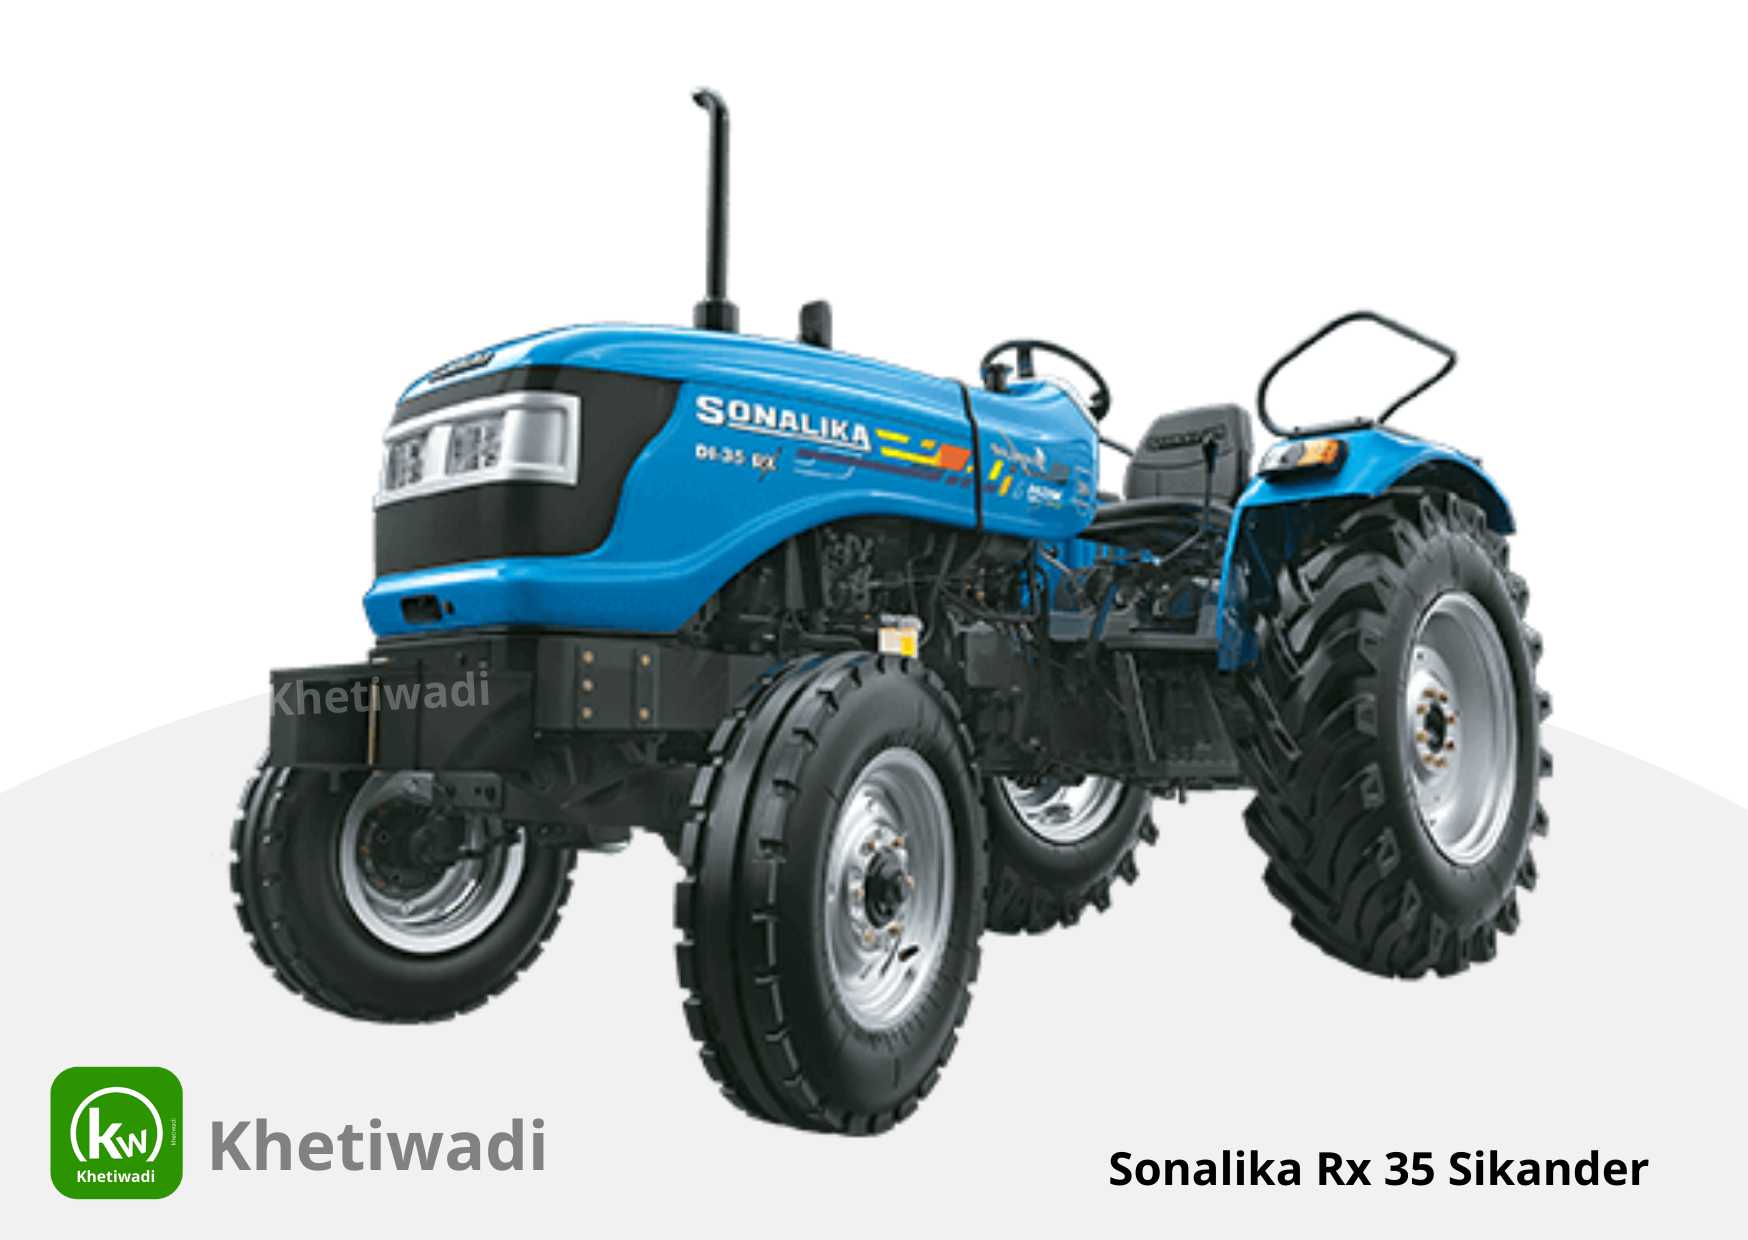 Sonalika Rx 35 Sikander image